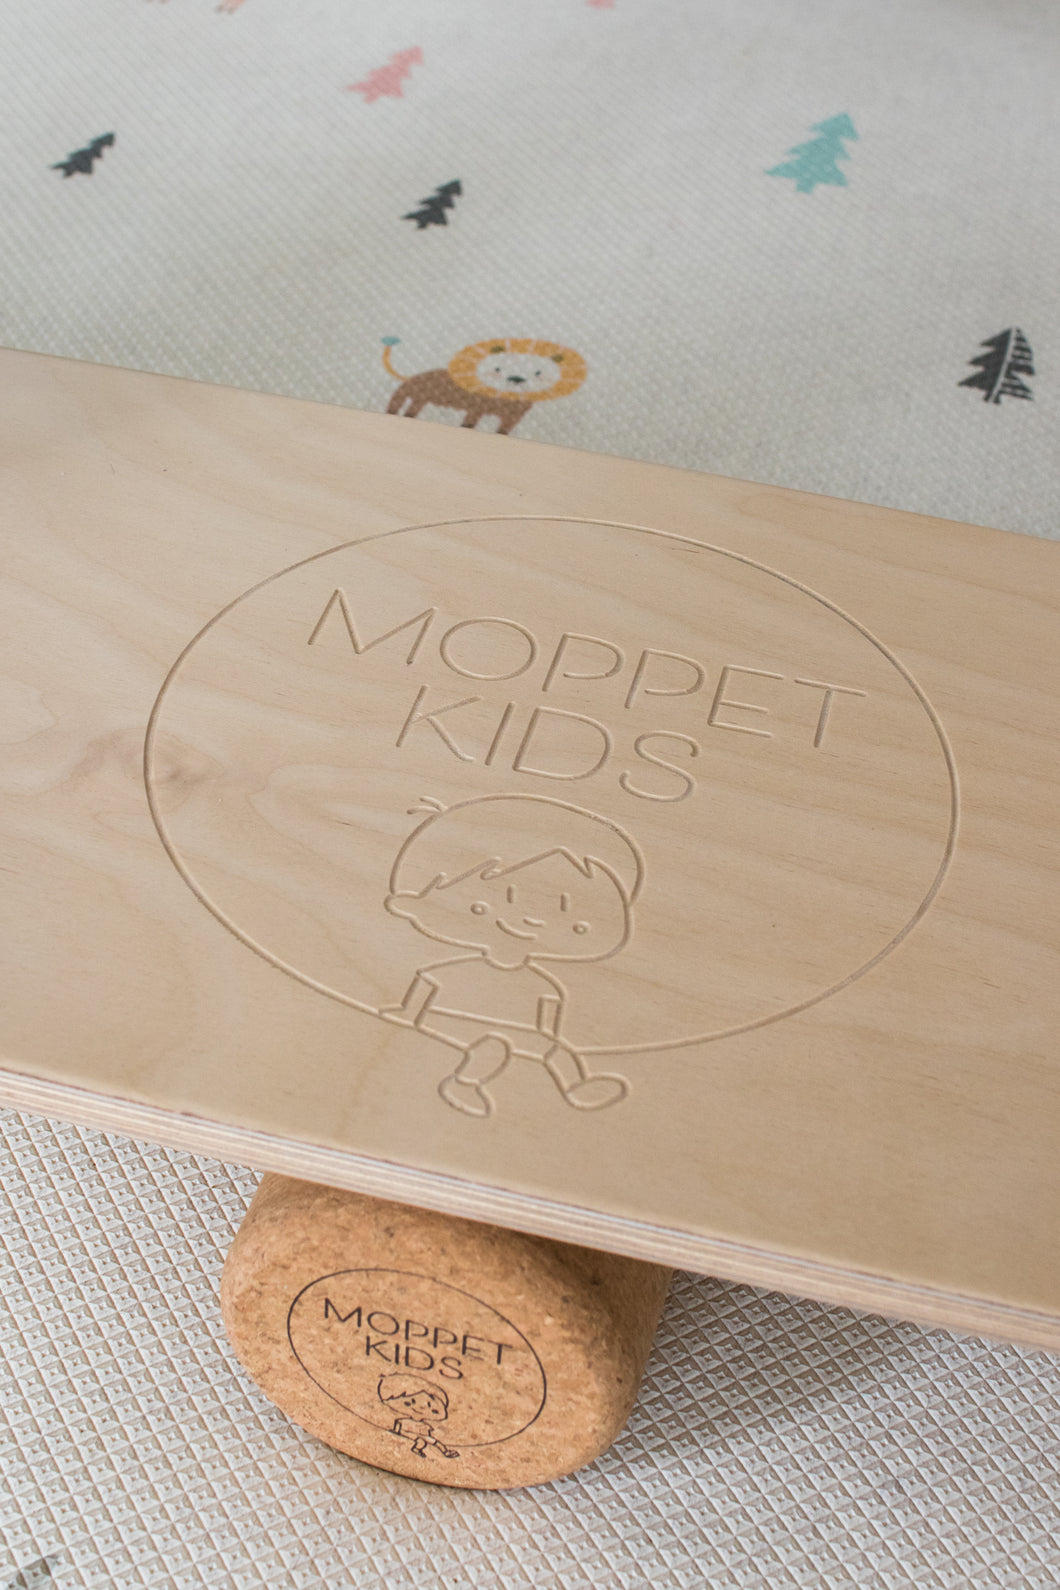 The Moppet Board